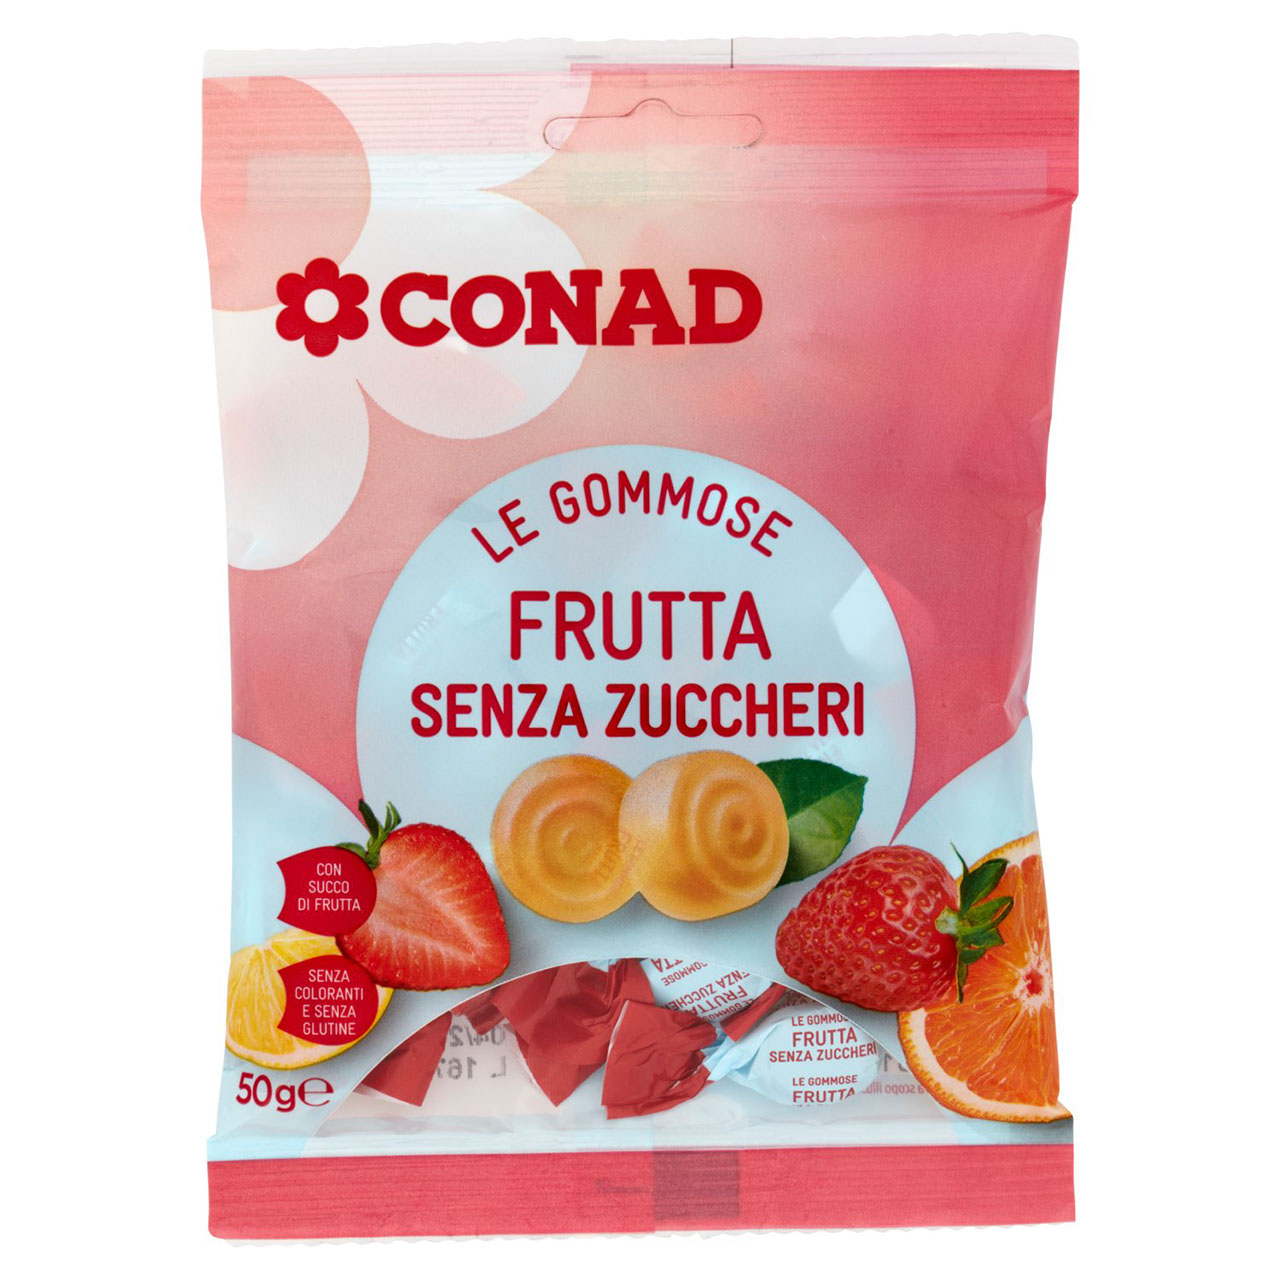 Le Gommose Frutta Senza Zuccheri 50 g Conad online